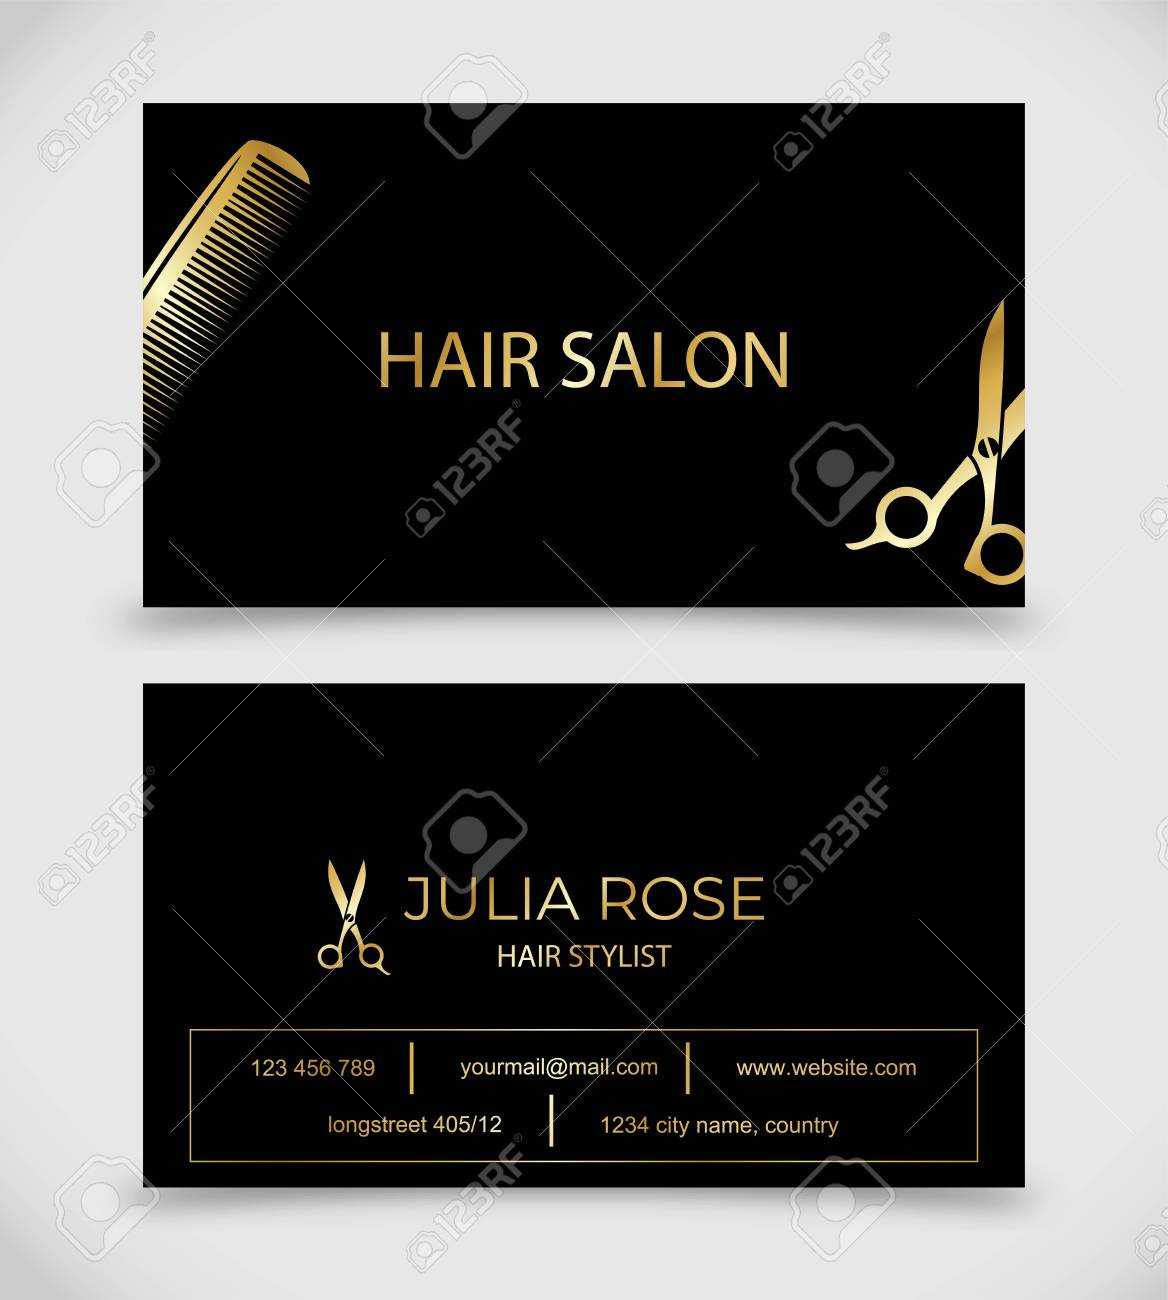 Hair Salon, Hair Stylist Business Card Vector Template With Hair Salon Business Card Template